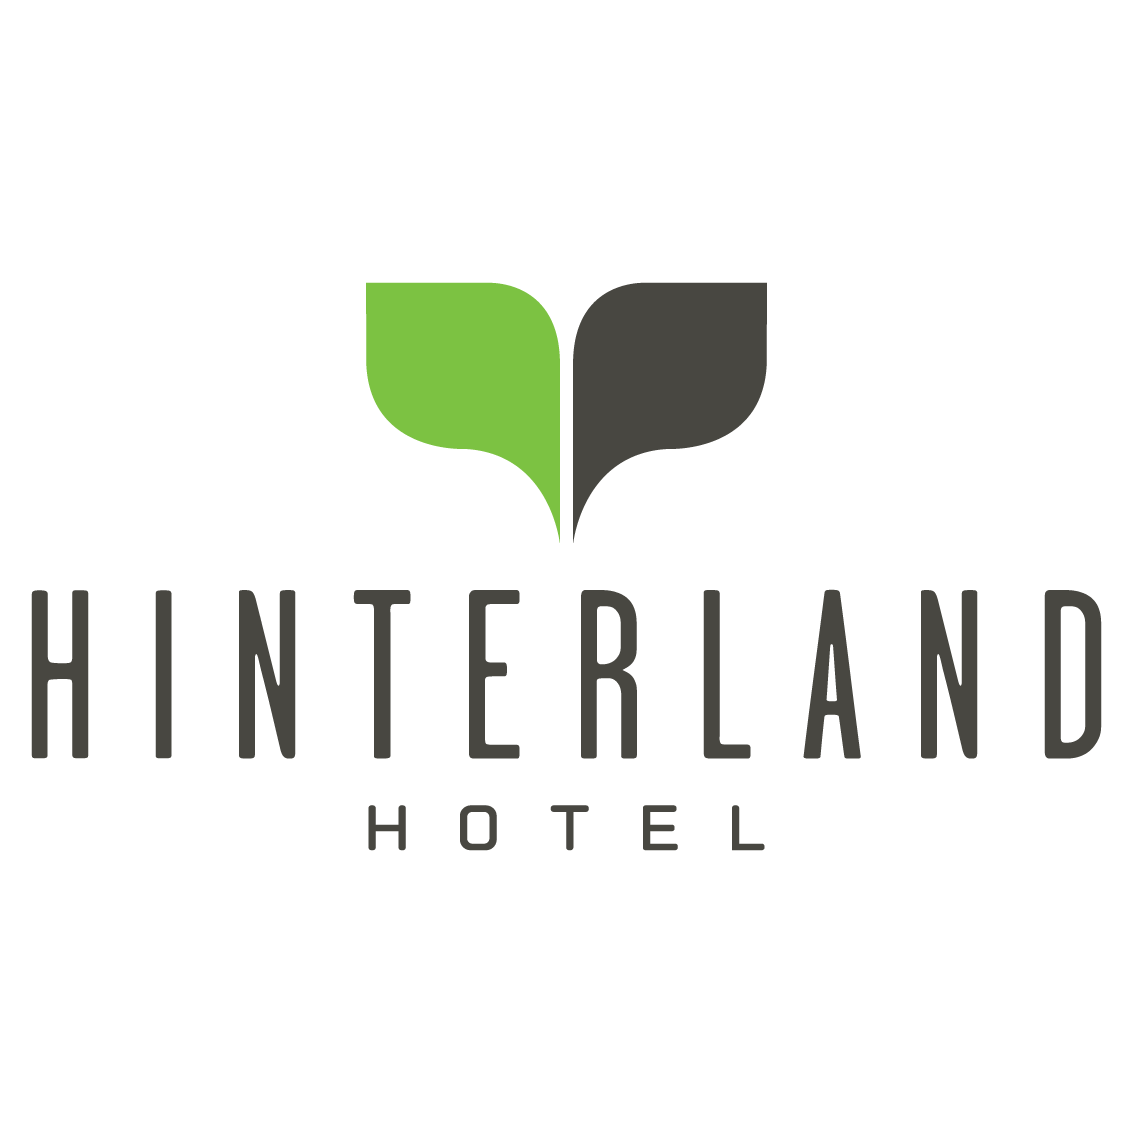 Hinterland Hotel